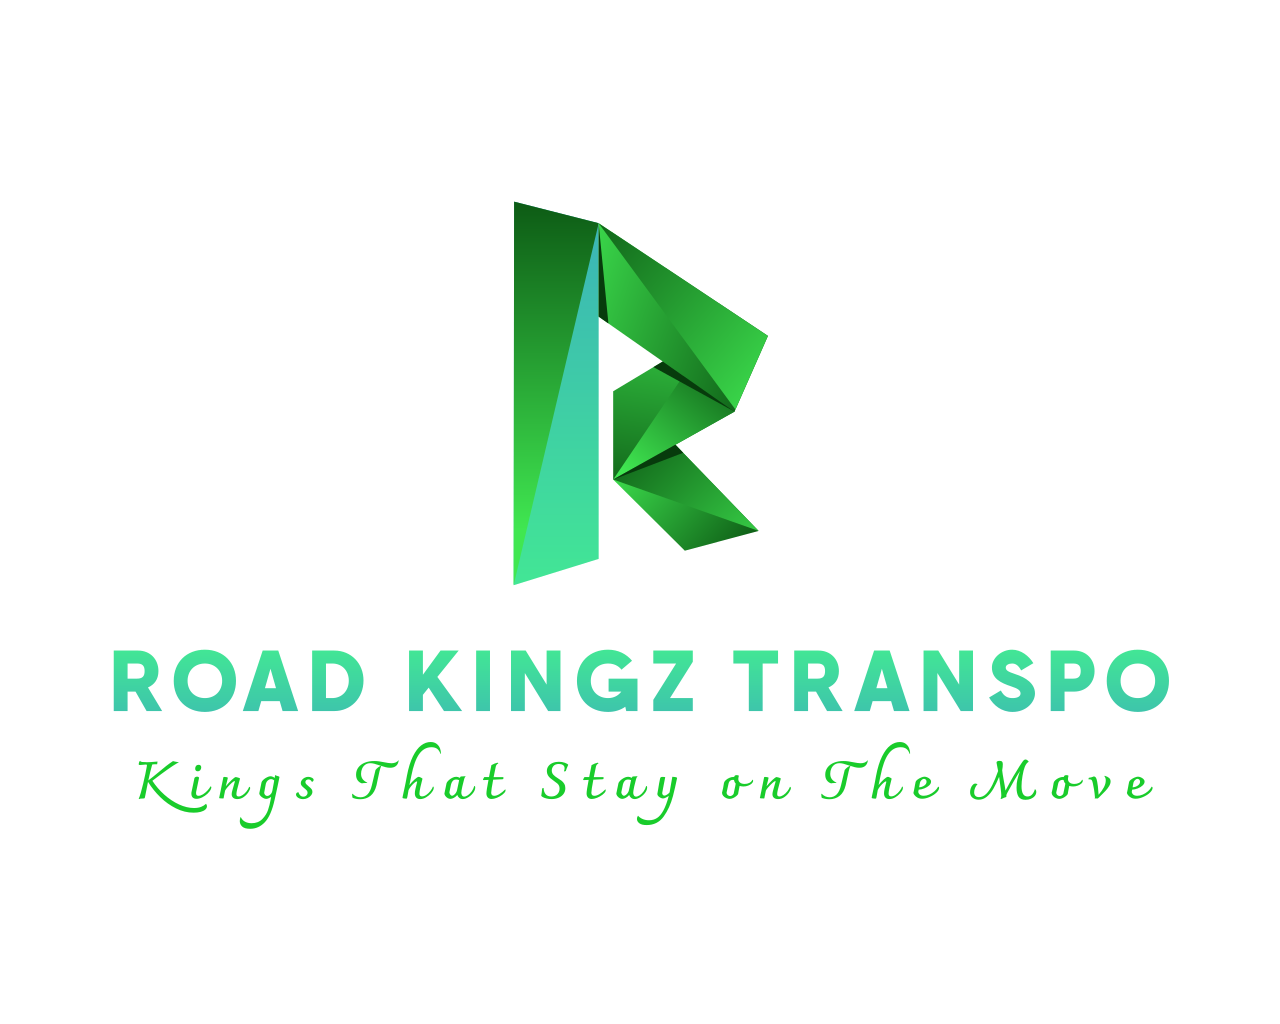 Road Kingz Transpo's logo